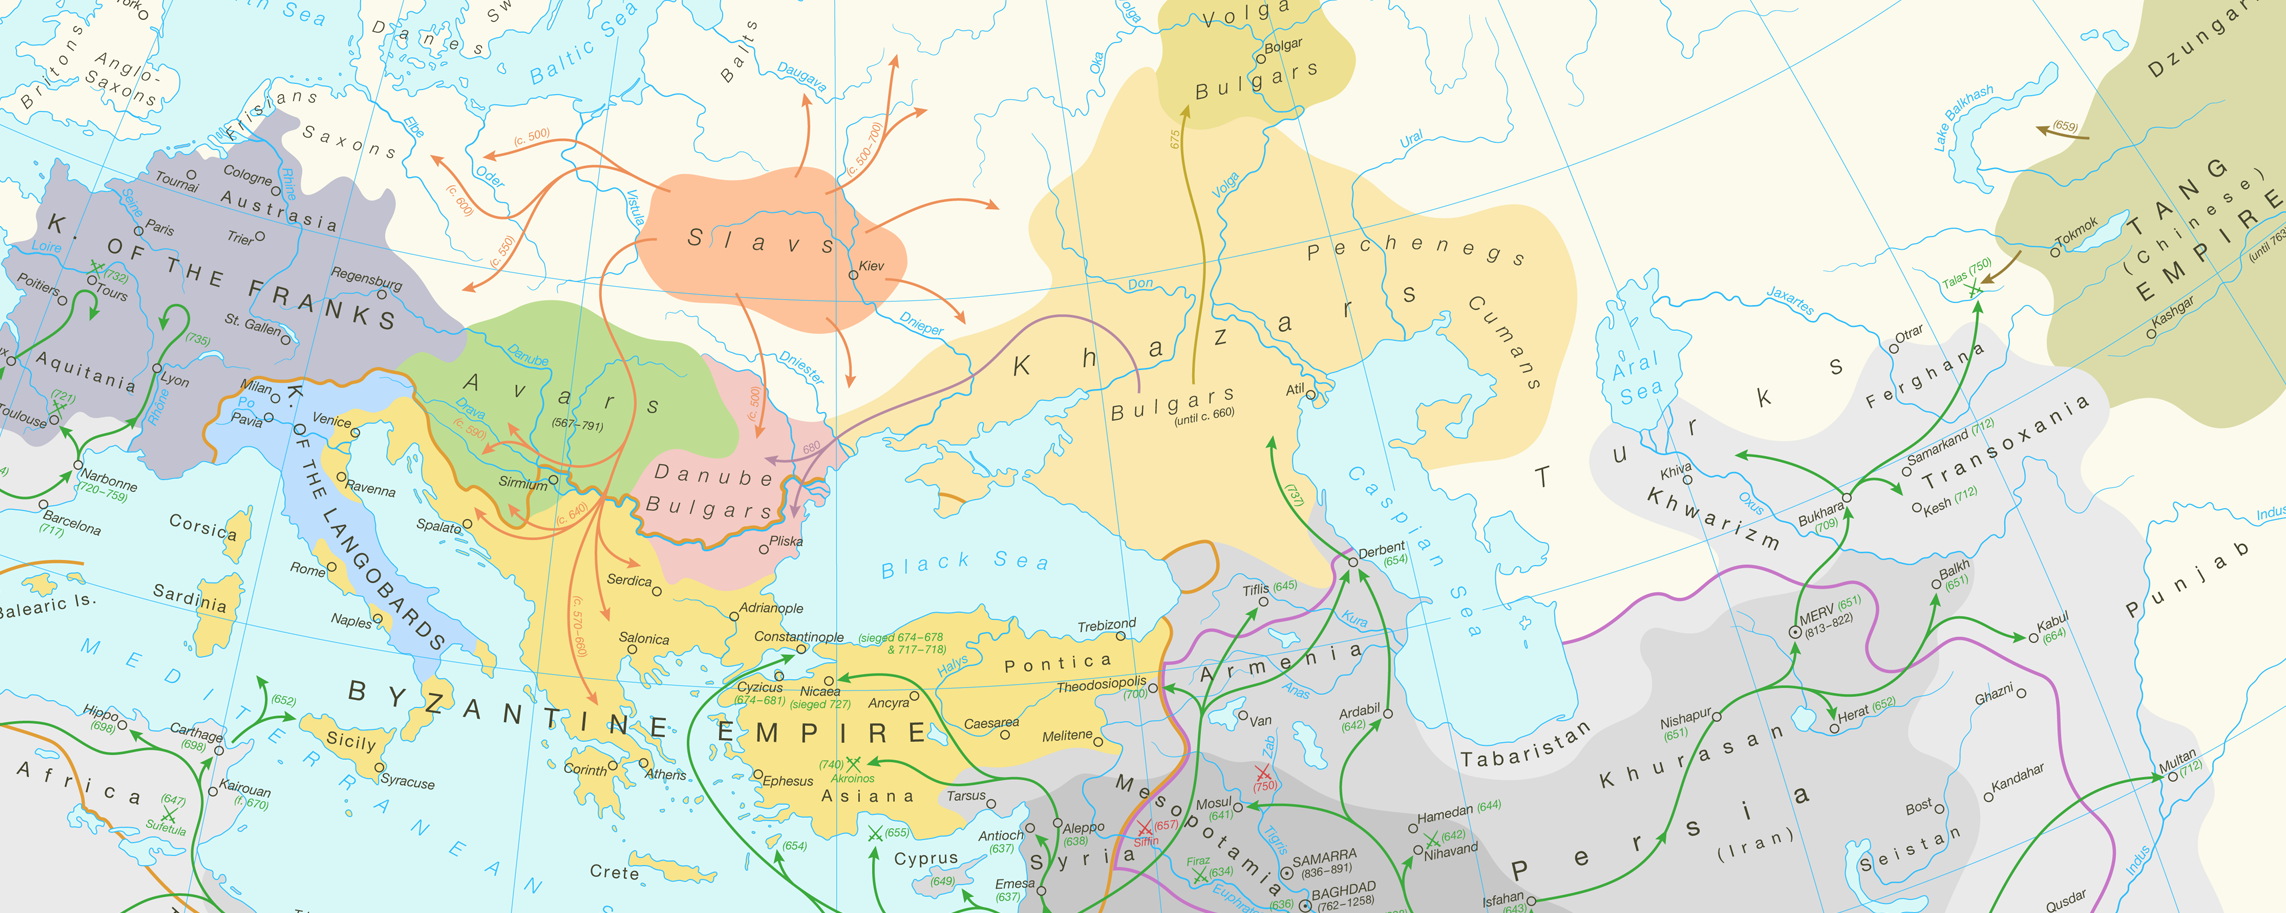 Современный взгляд на распространение славян из бассейна Припяти (гипотеза М. Щукина)